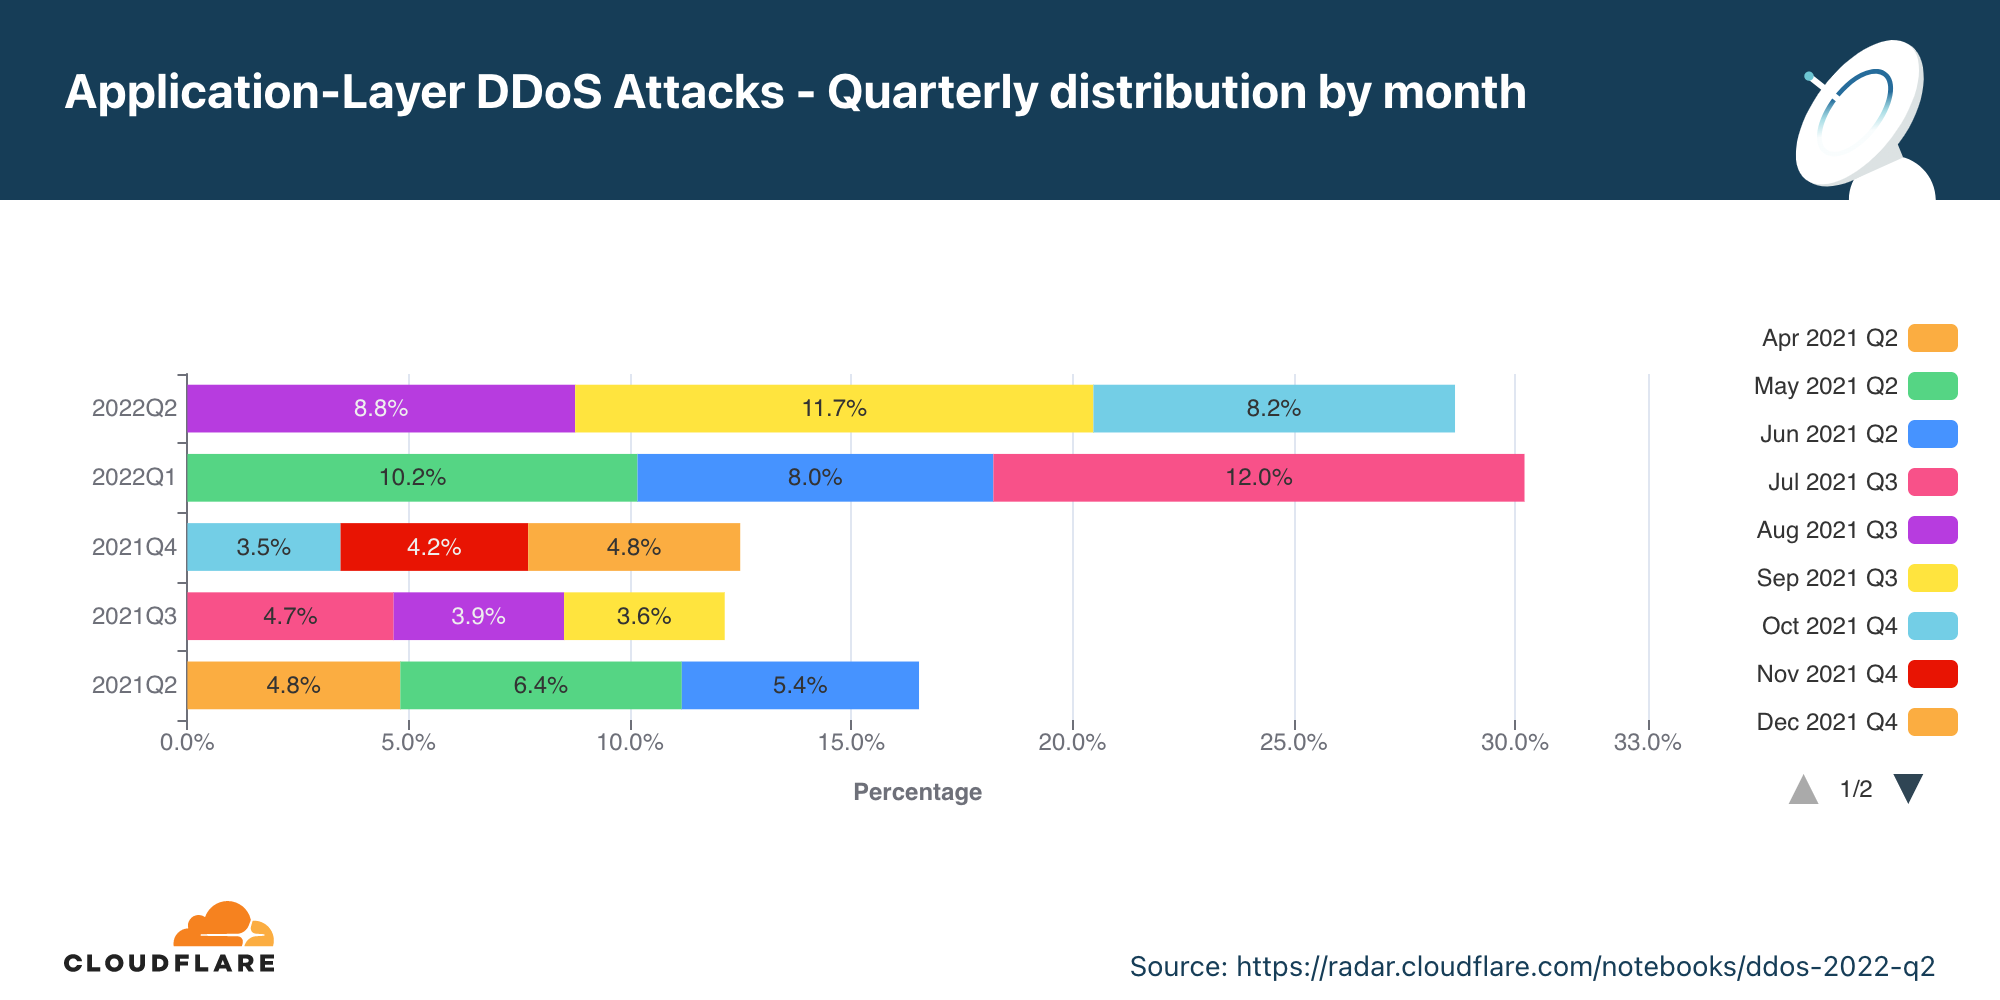 過去12ヶ月のアプリケーション層DDoS攻撃の月別年間分布のグラフ